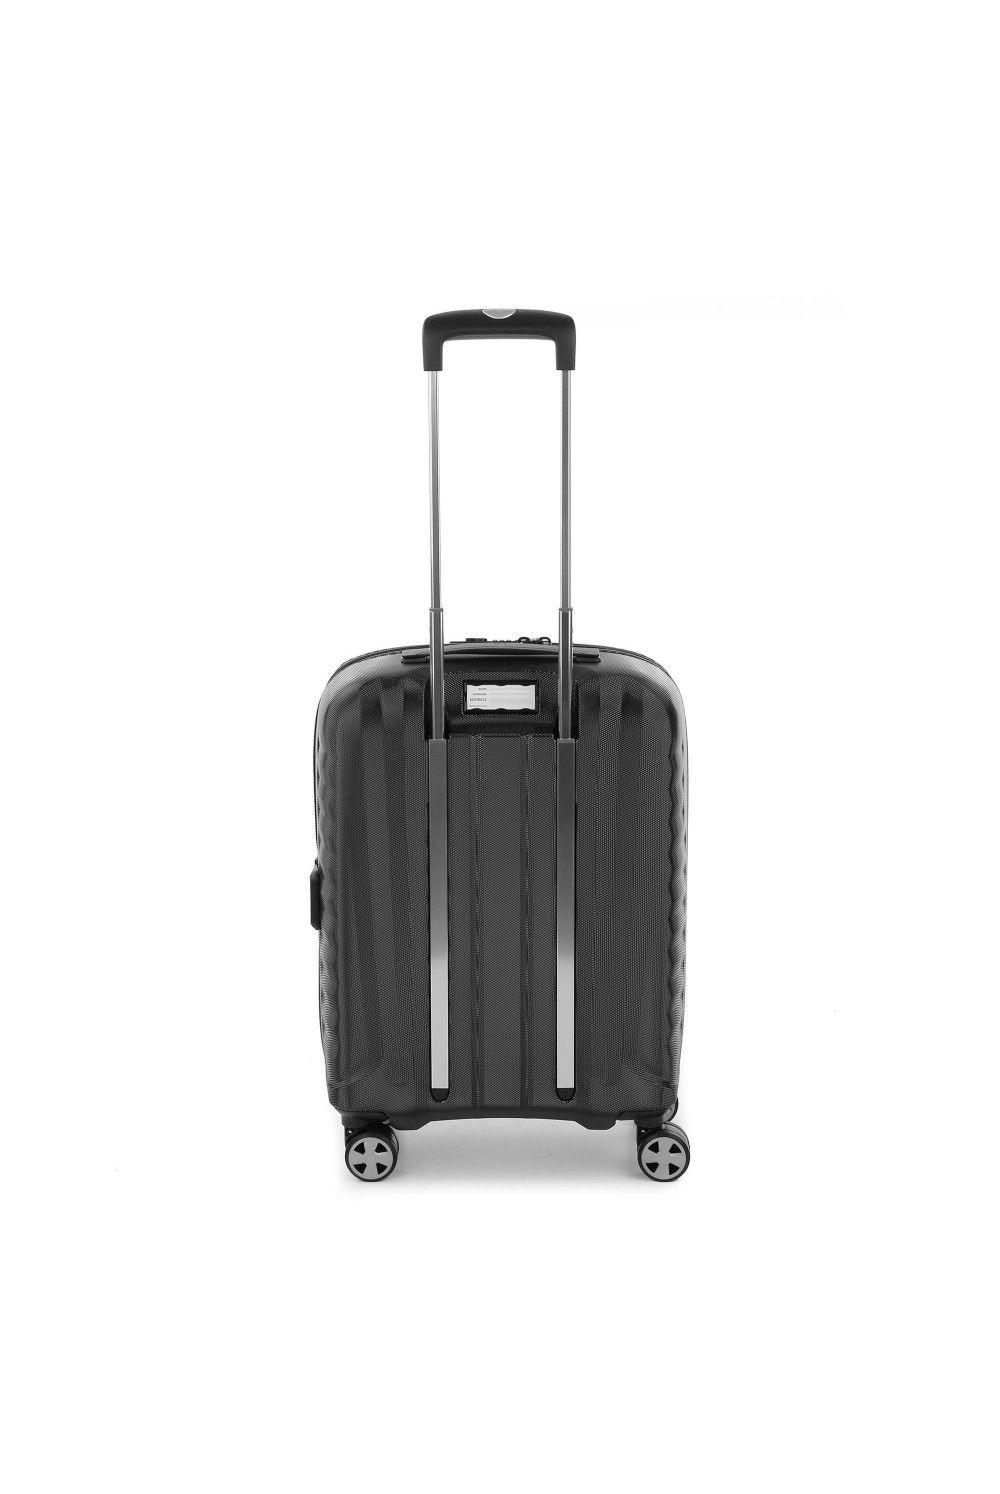 Roncato bagages à main D-Premium 55x40x20/23 extensible anthracite